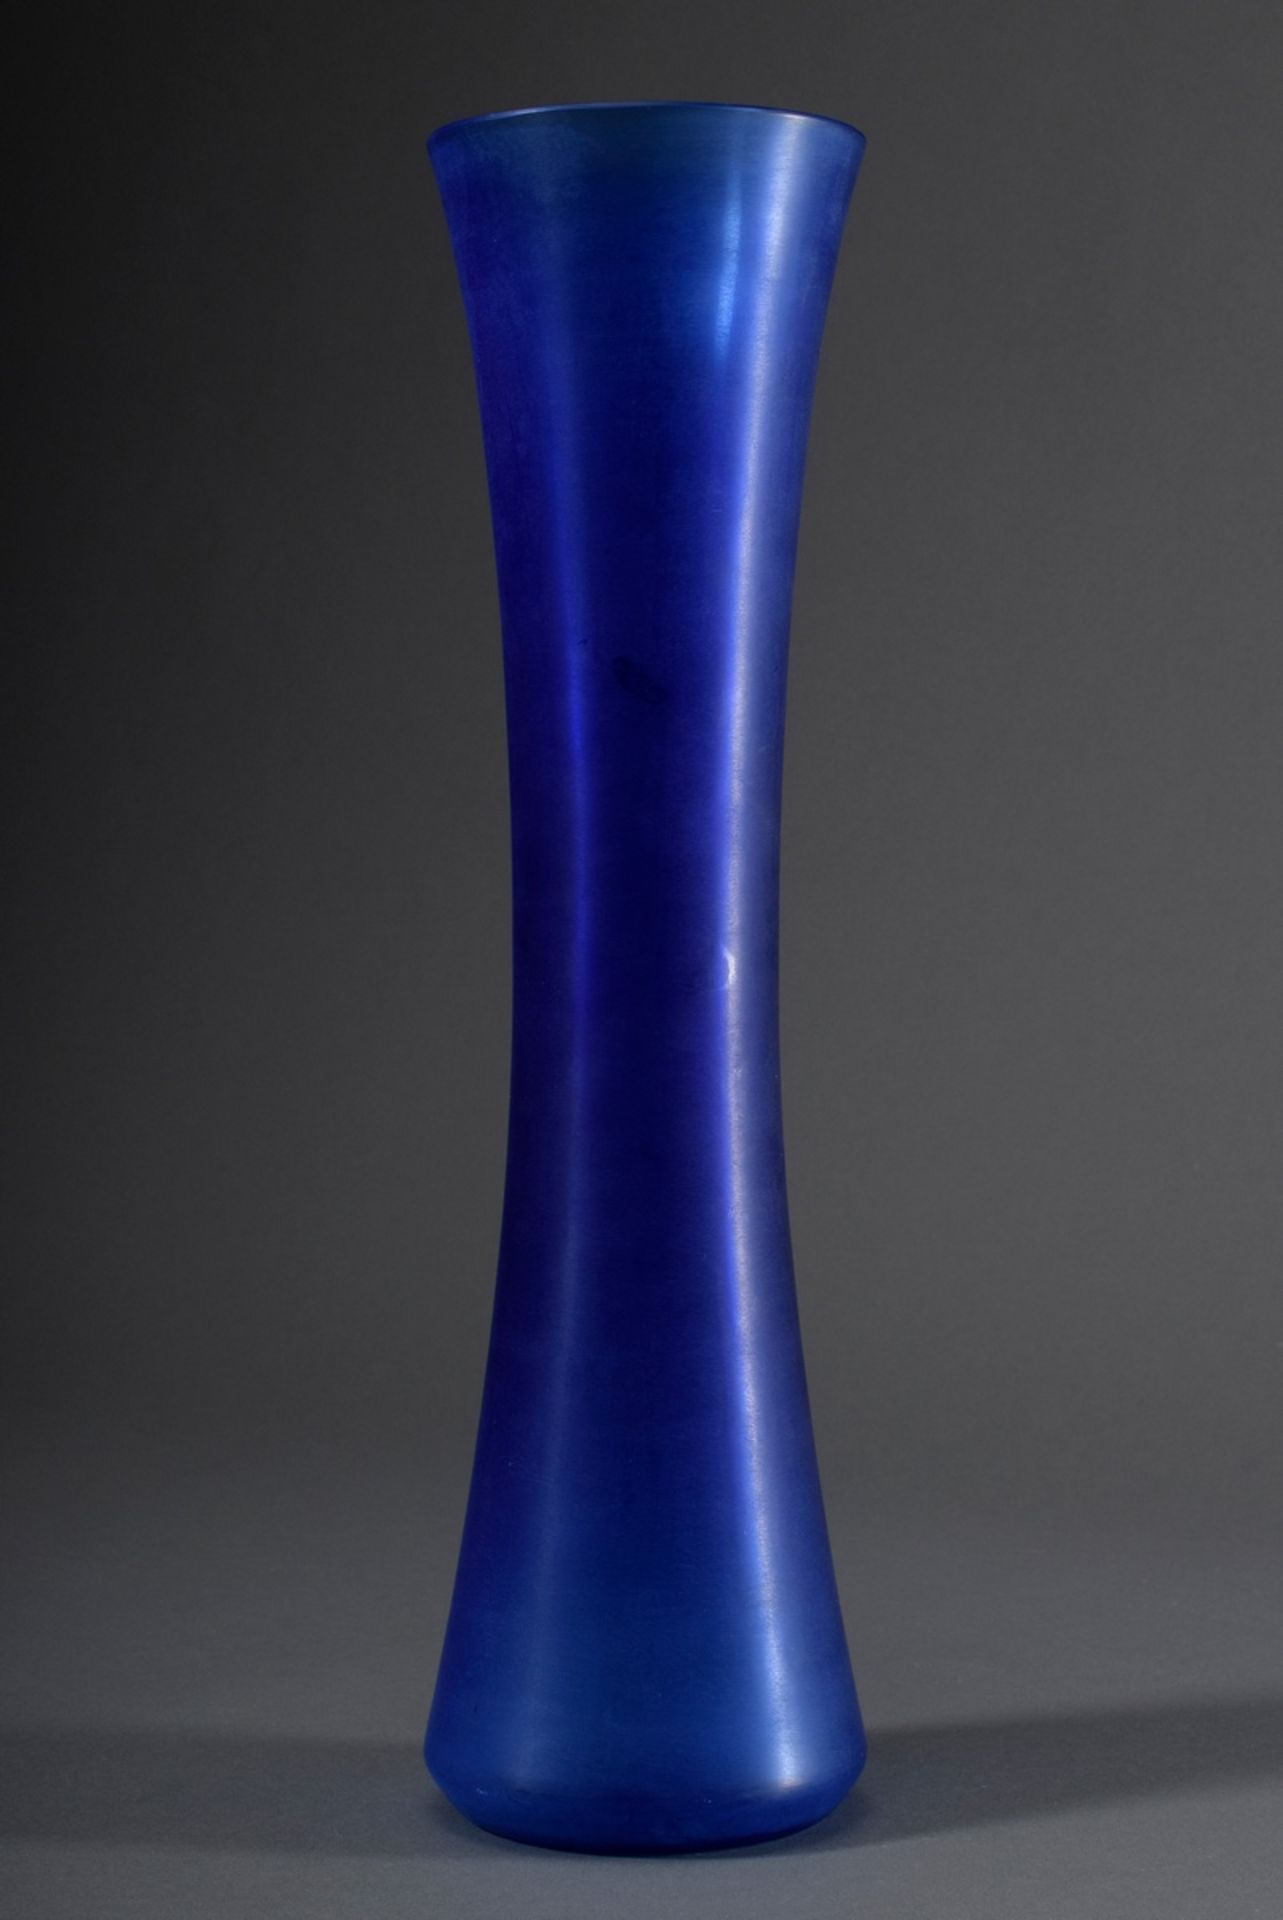 Hohe Salviati Stangenvase aus blauem Glas mit satinierter Oberfläche, am Boden